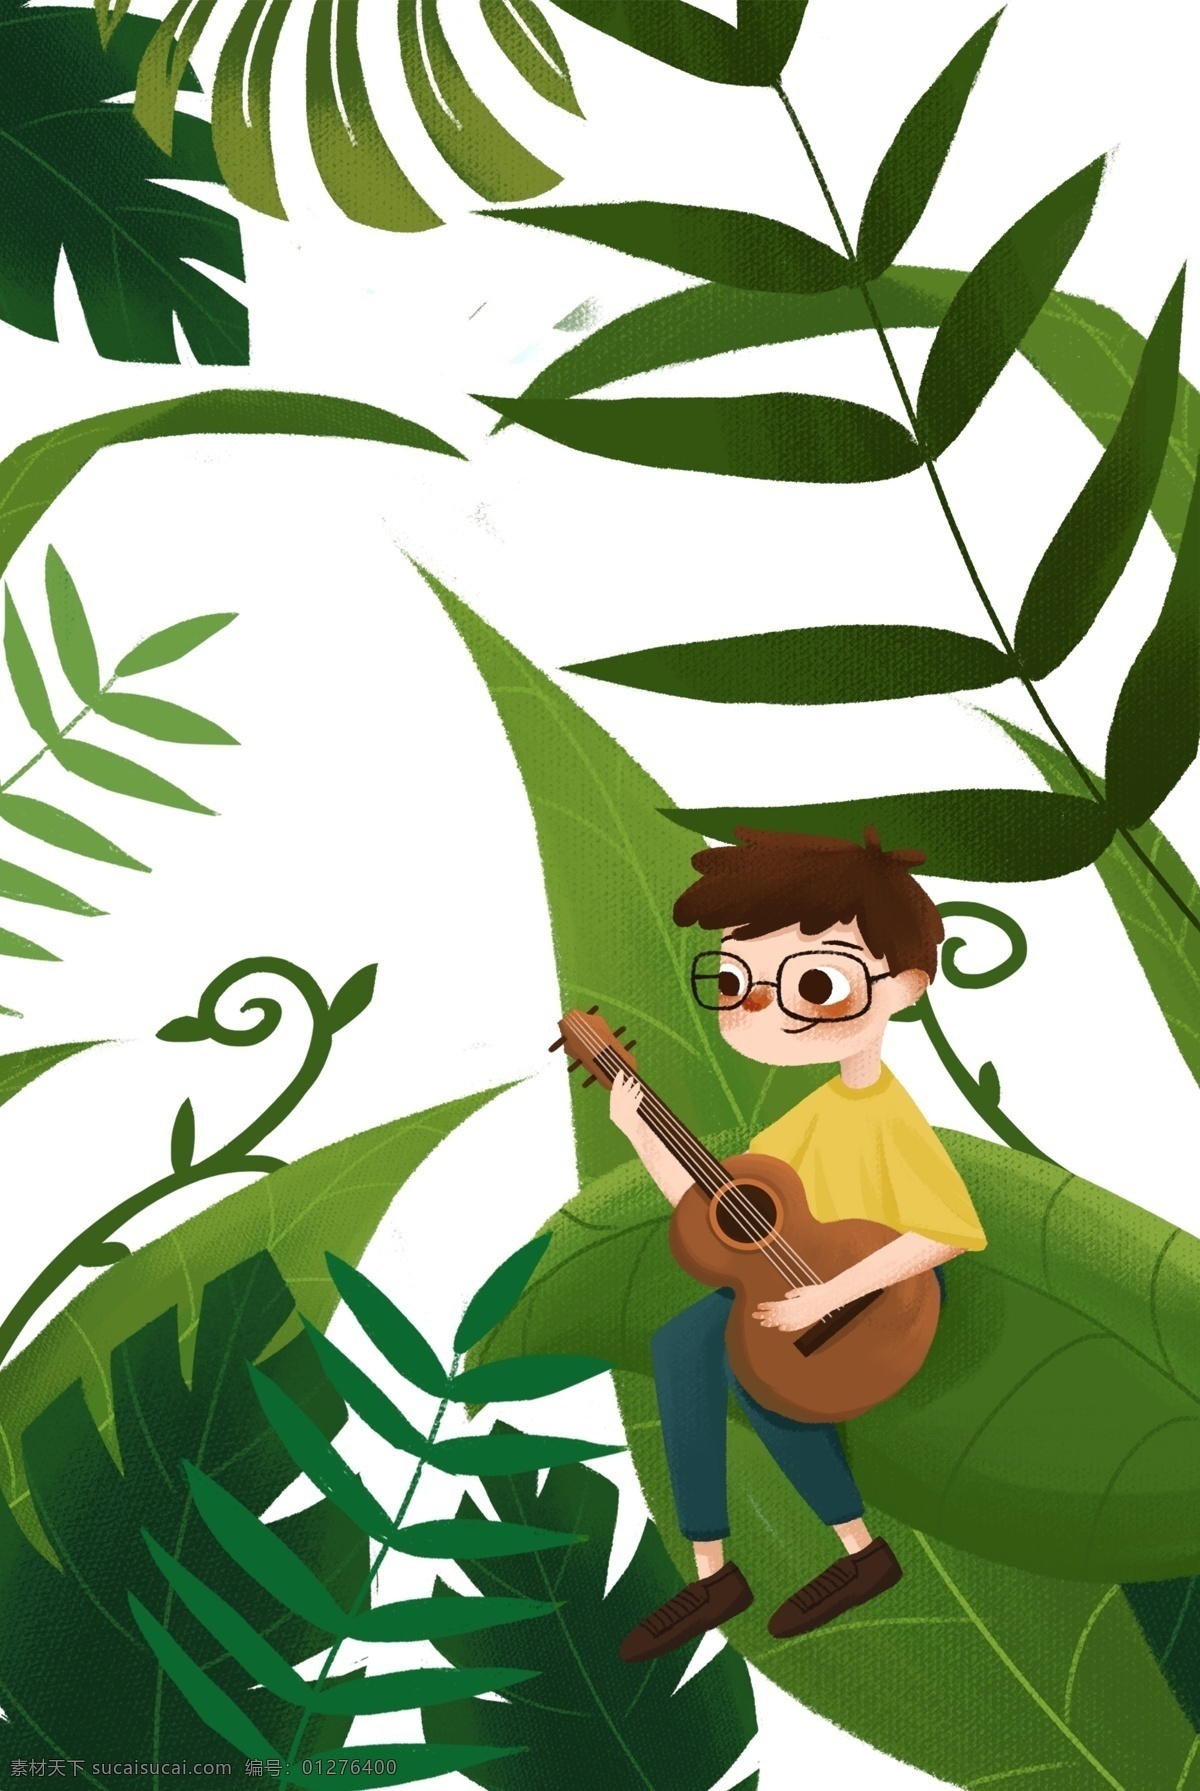 手绘 卡通 植物 包围 小 男孩 元素 弹吉他的少年 可爱的少年 卡通风格 可爱风格 弹吉他 乐器 人物 吉他 彩色 音乐 叶子 绿叶